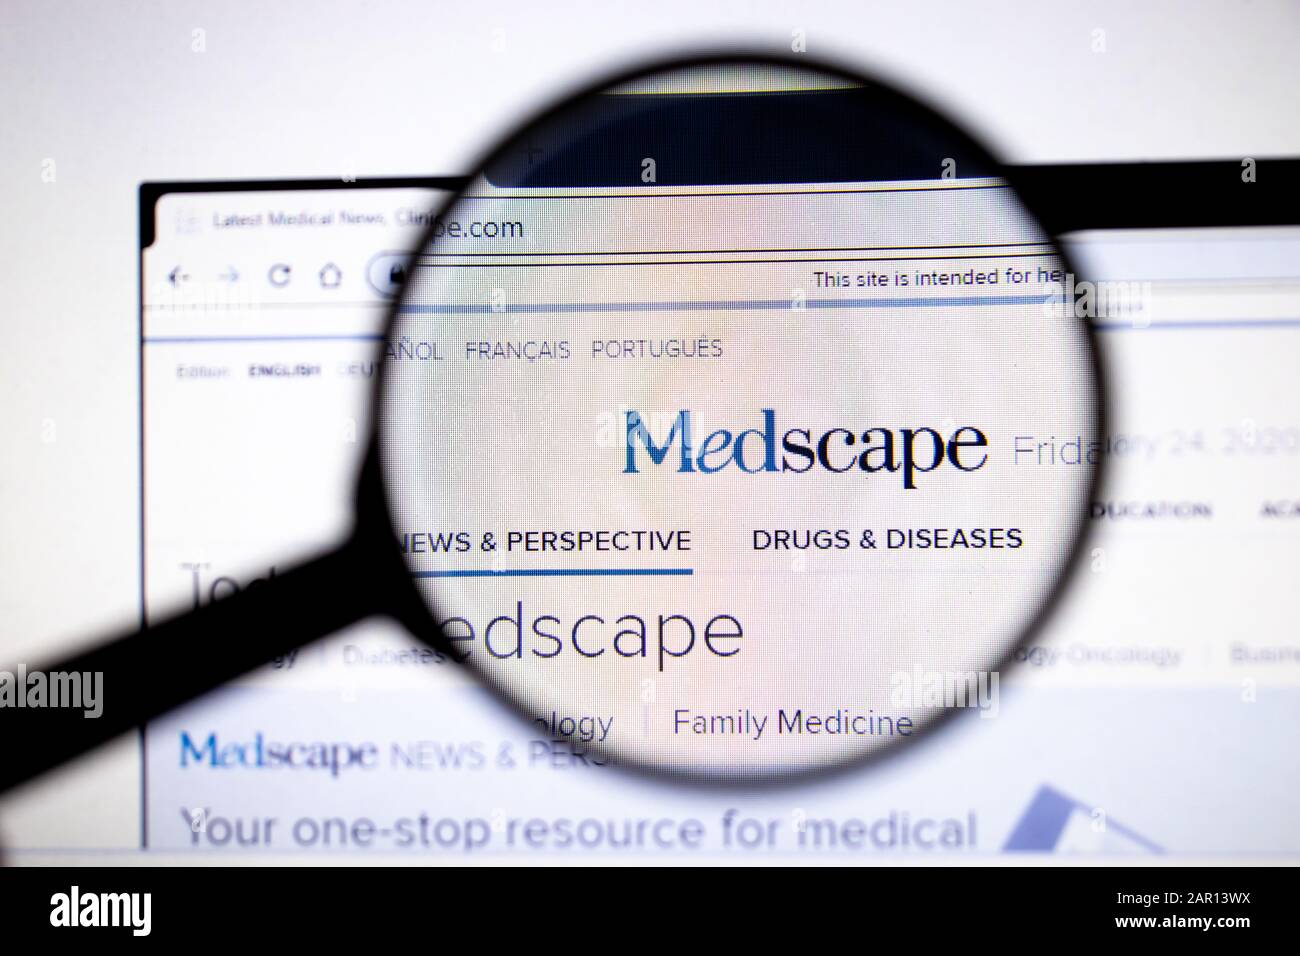 Los Angeles, Californie, États-Unis - 25 janvier 2020: Page du site Medscape. Logo Medscape.com sur l'écran, éditorial illustratif Banque D'Images